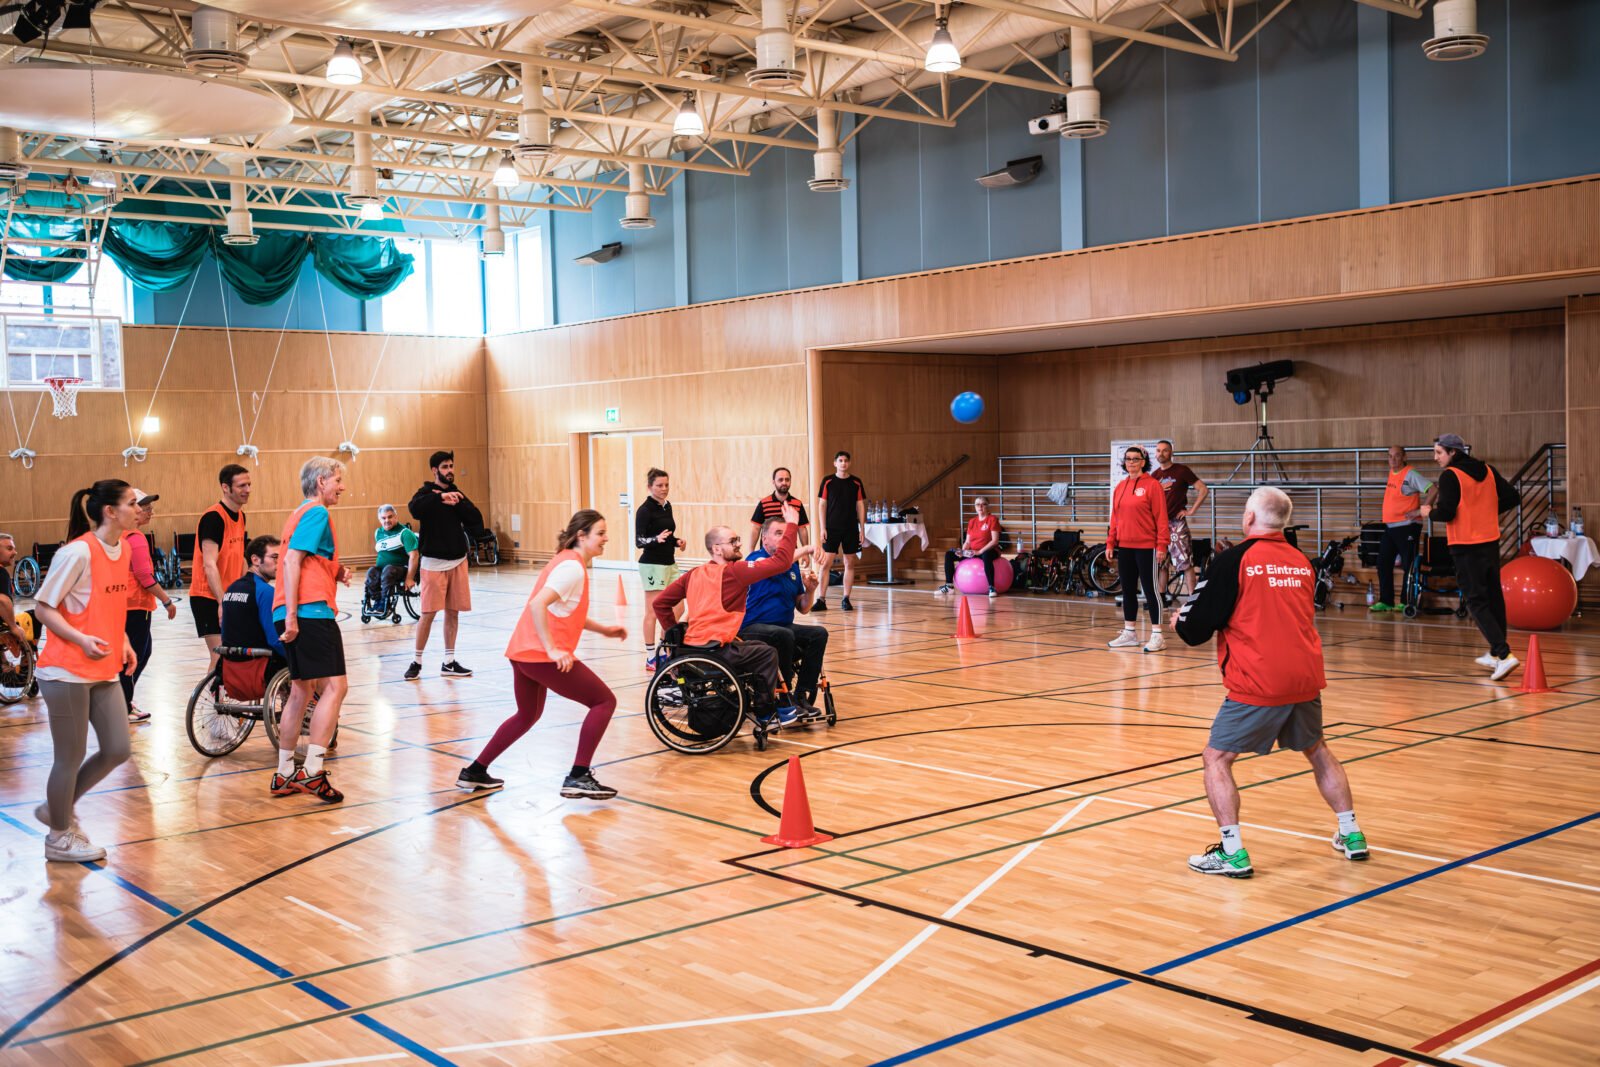 Menschen mit und ohne Behinderung, manche im Rollstuhl, spielen gemeinsam eine Ballsportart in einer Turnhalle.